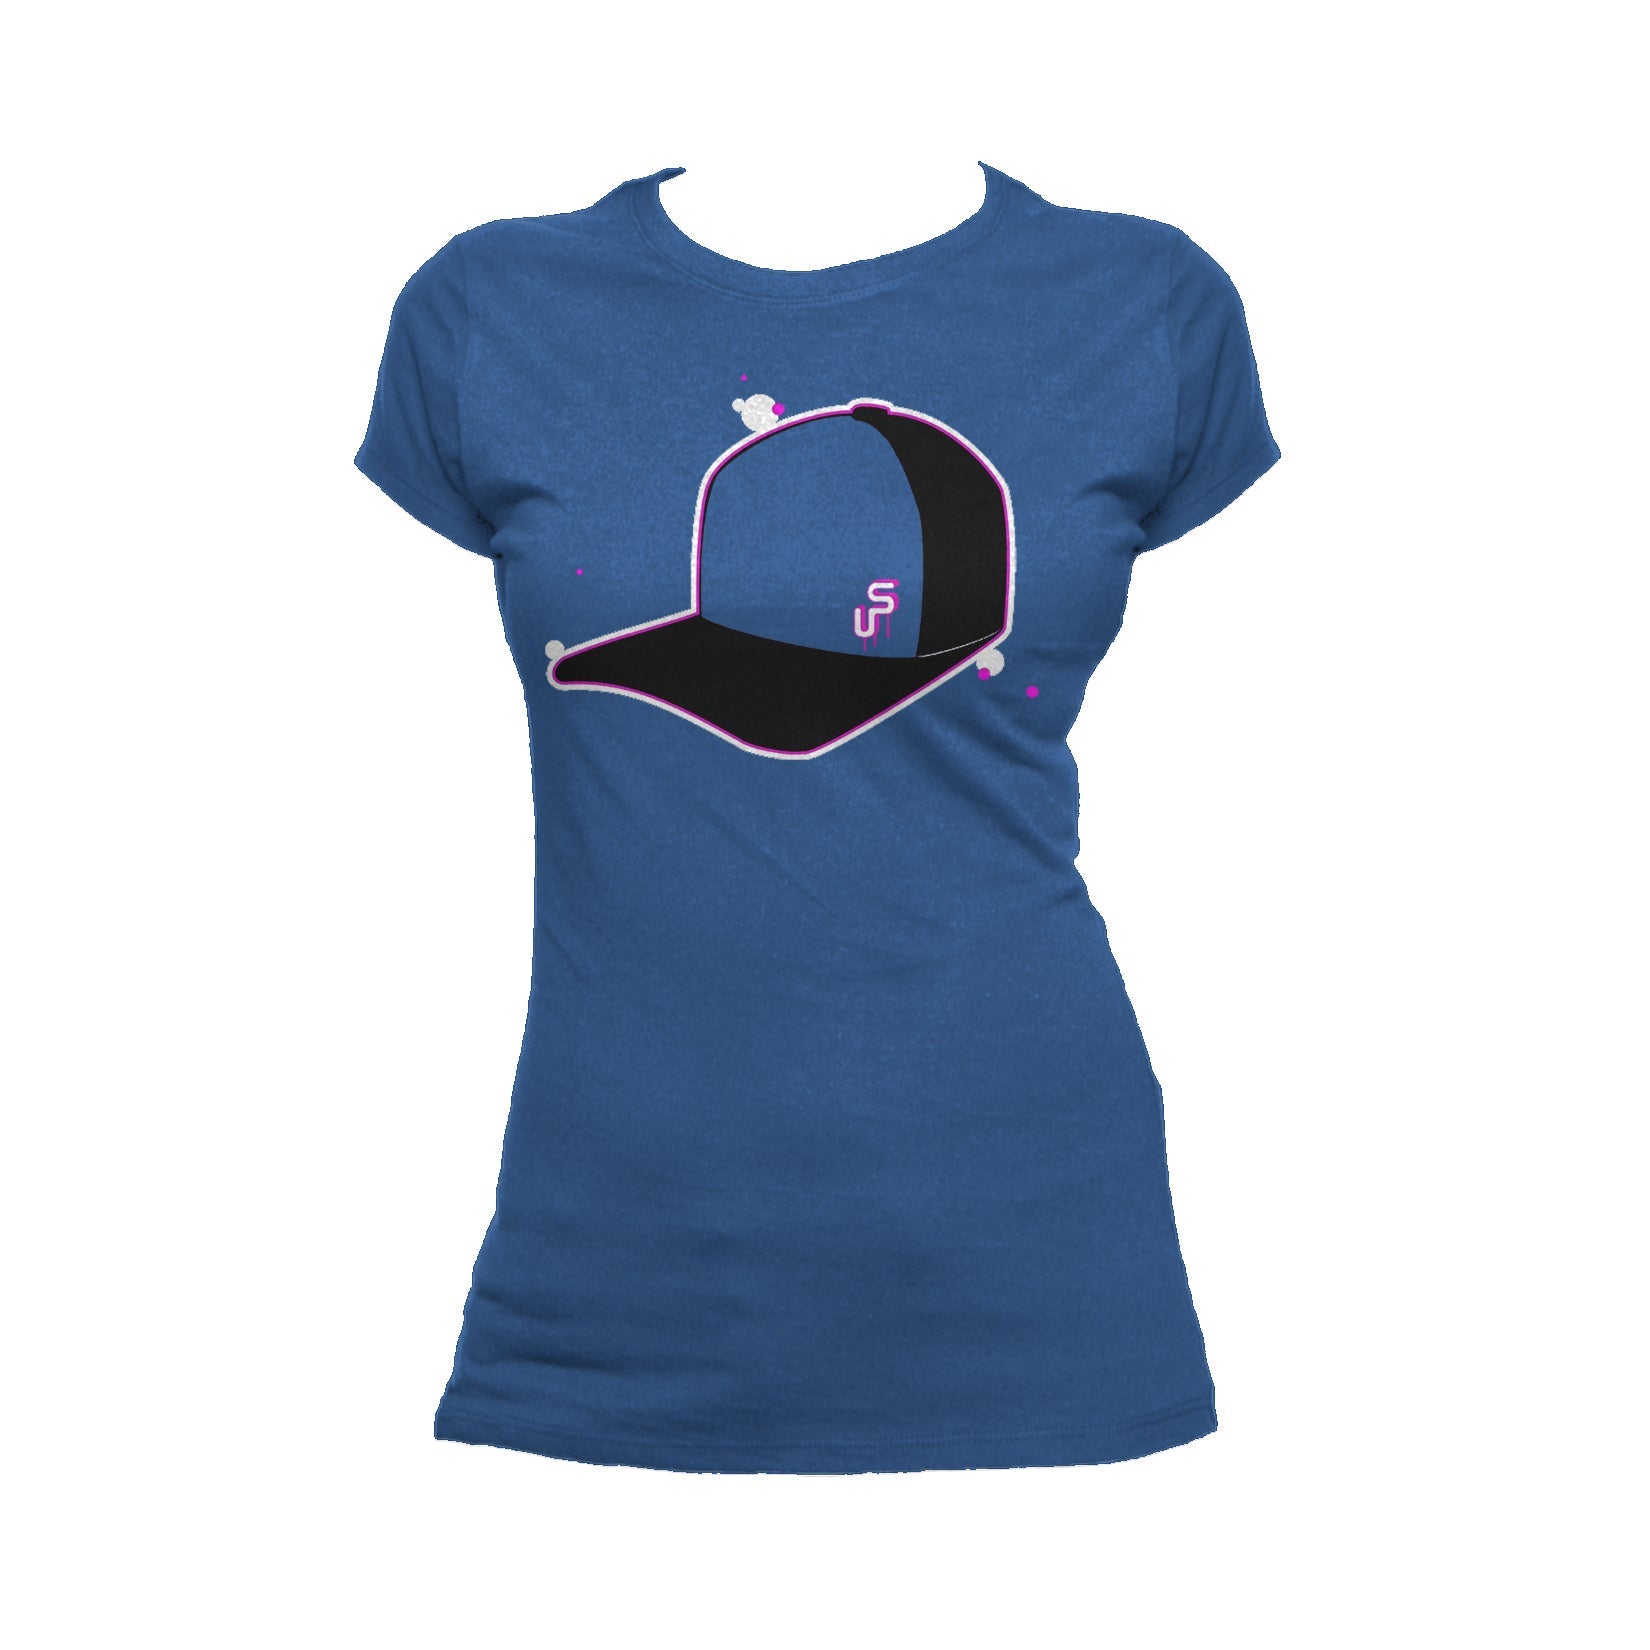 US Brand X Old's Kool Beak Official Women's T-Shirt ()